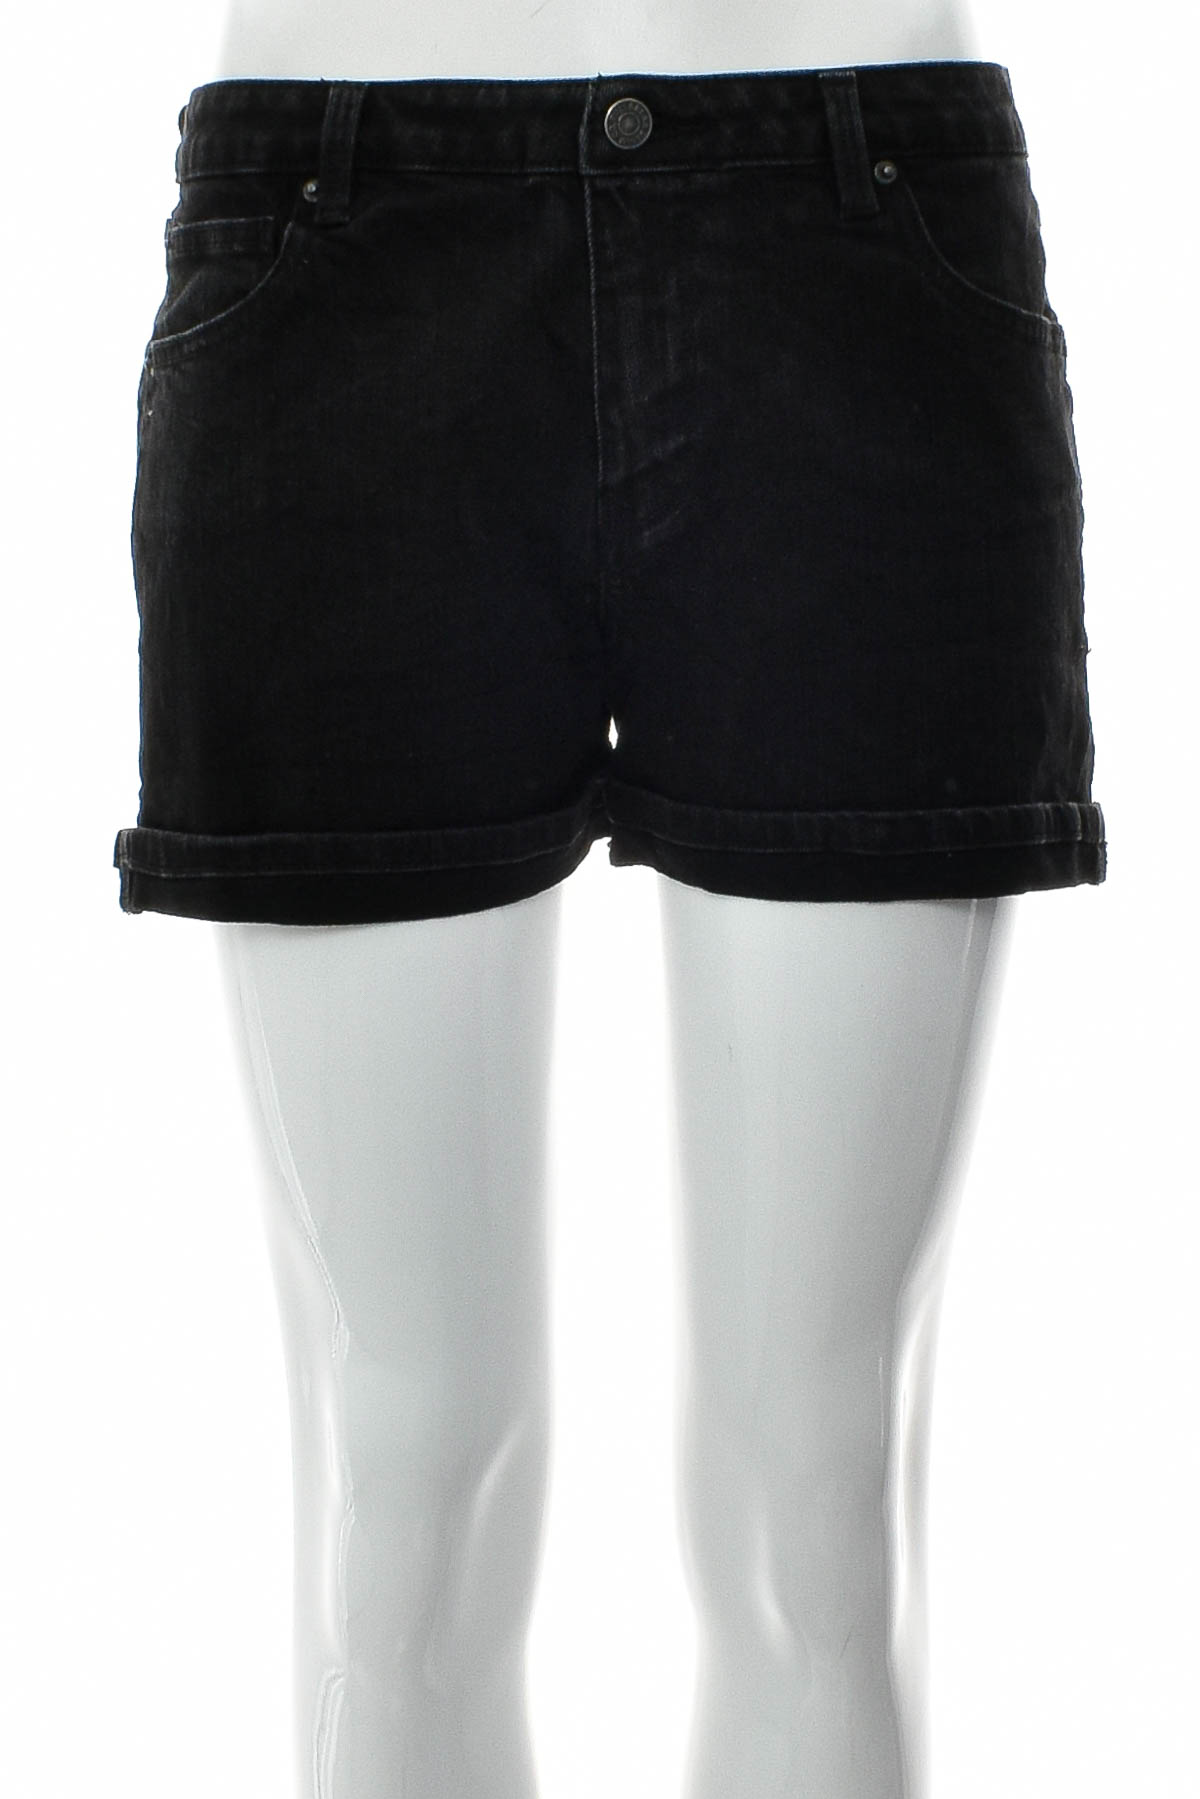 Krótkie spodnie damskie - Pull & Bear - 0